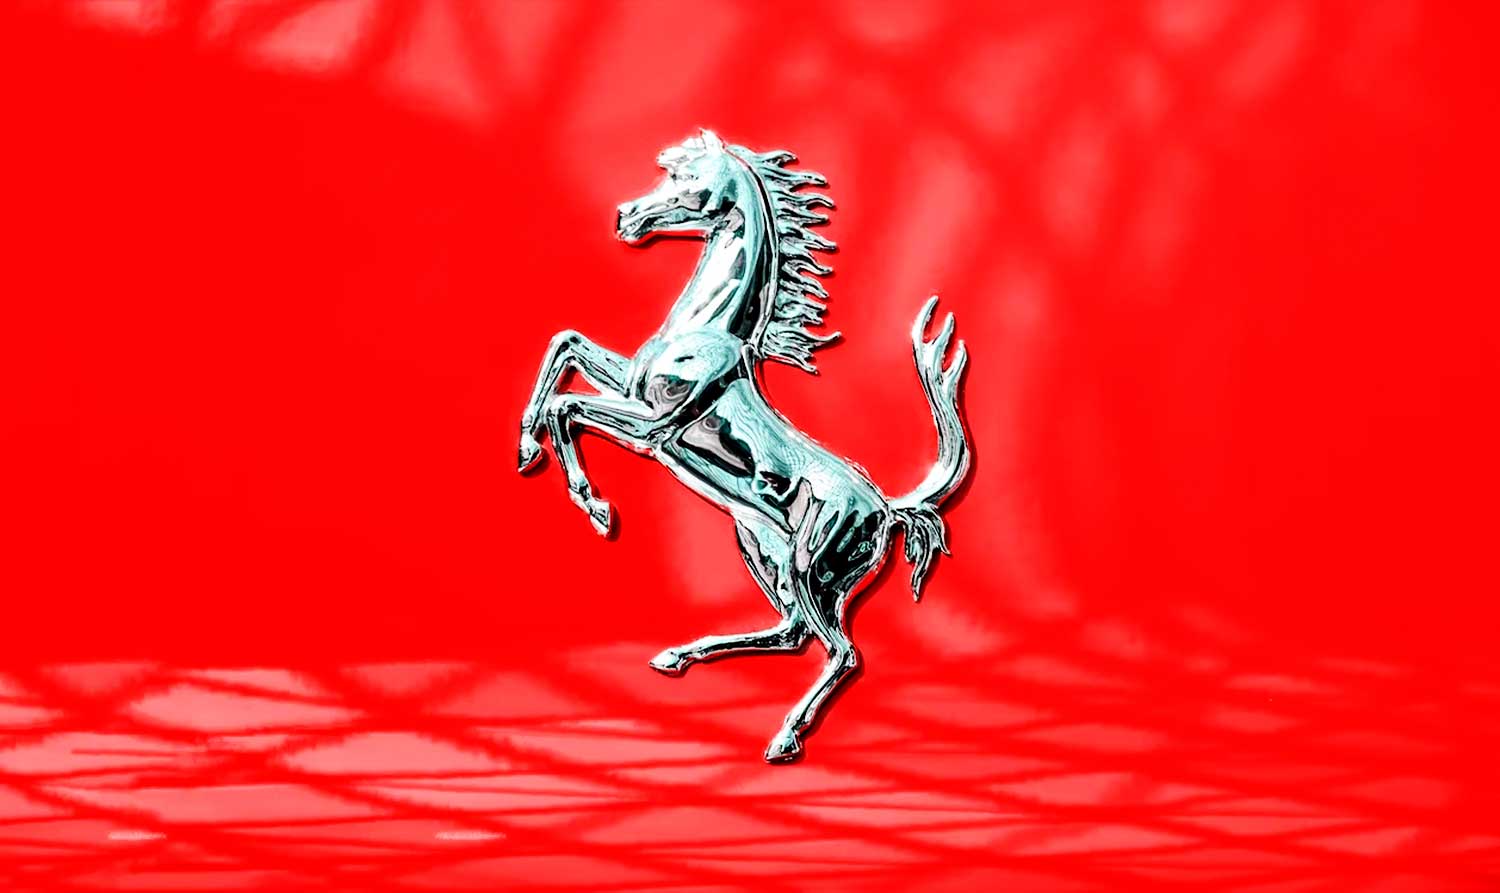 Plan de marketing y comunicación de Ferrari